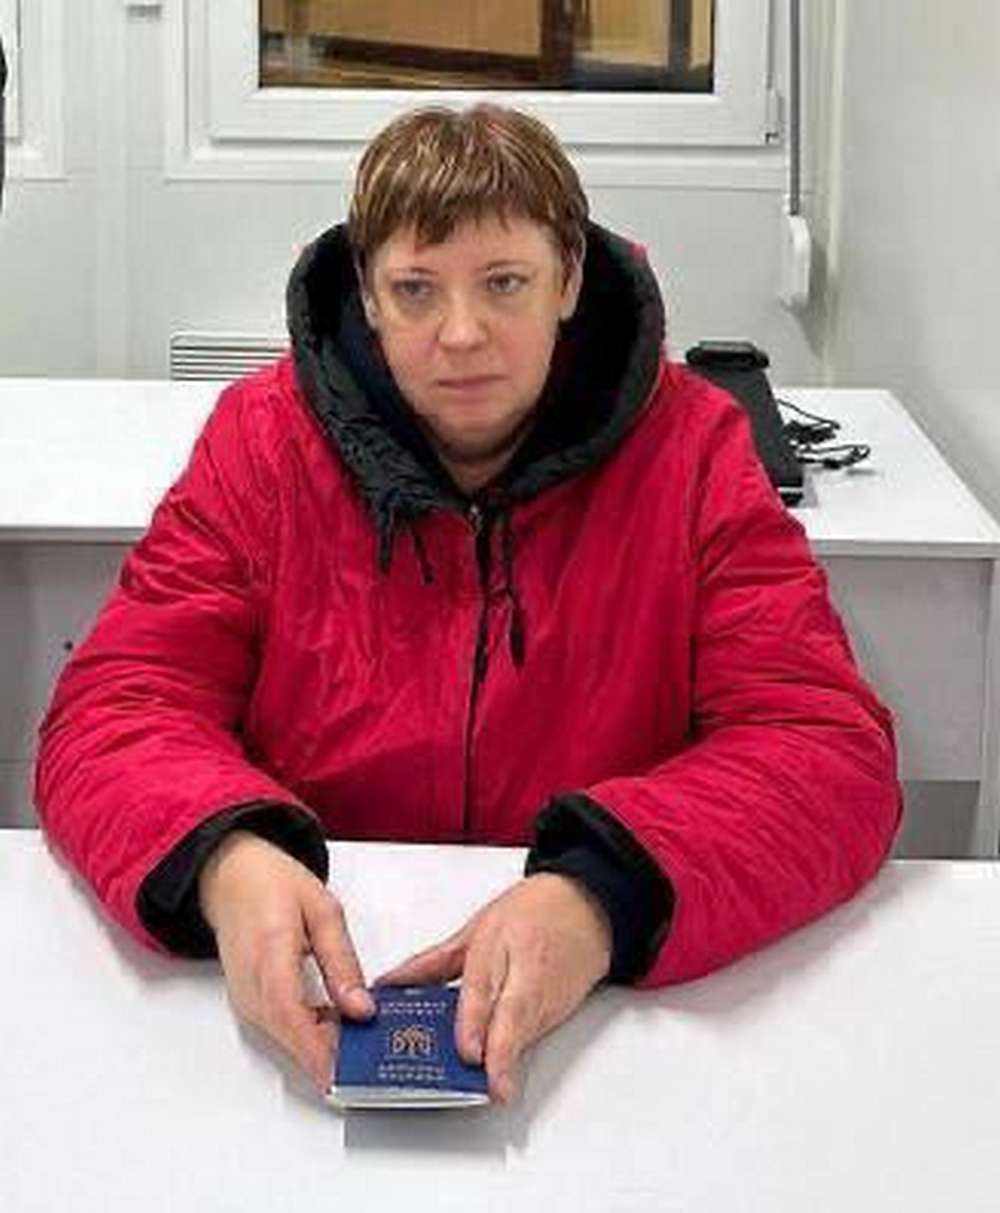 Затримано ексчиновницю, яка віддала окупантам 24 швидких для депортації українських дітей